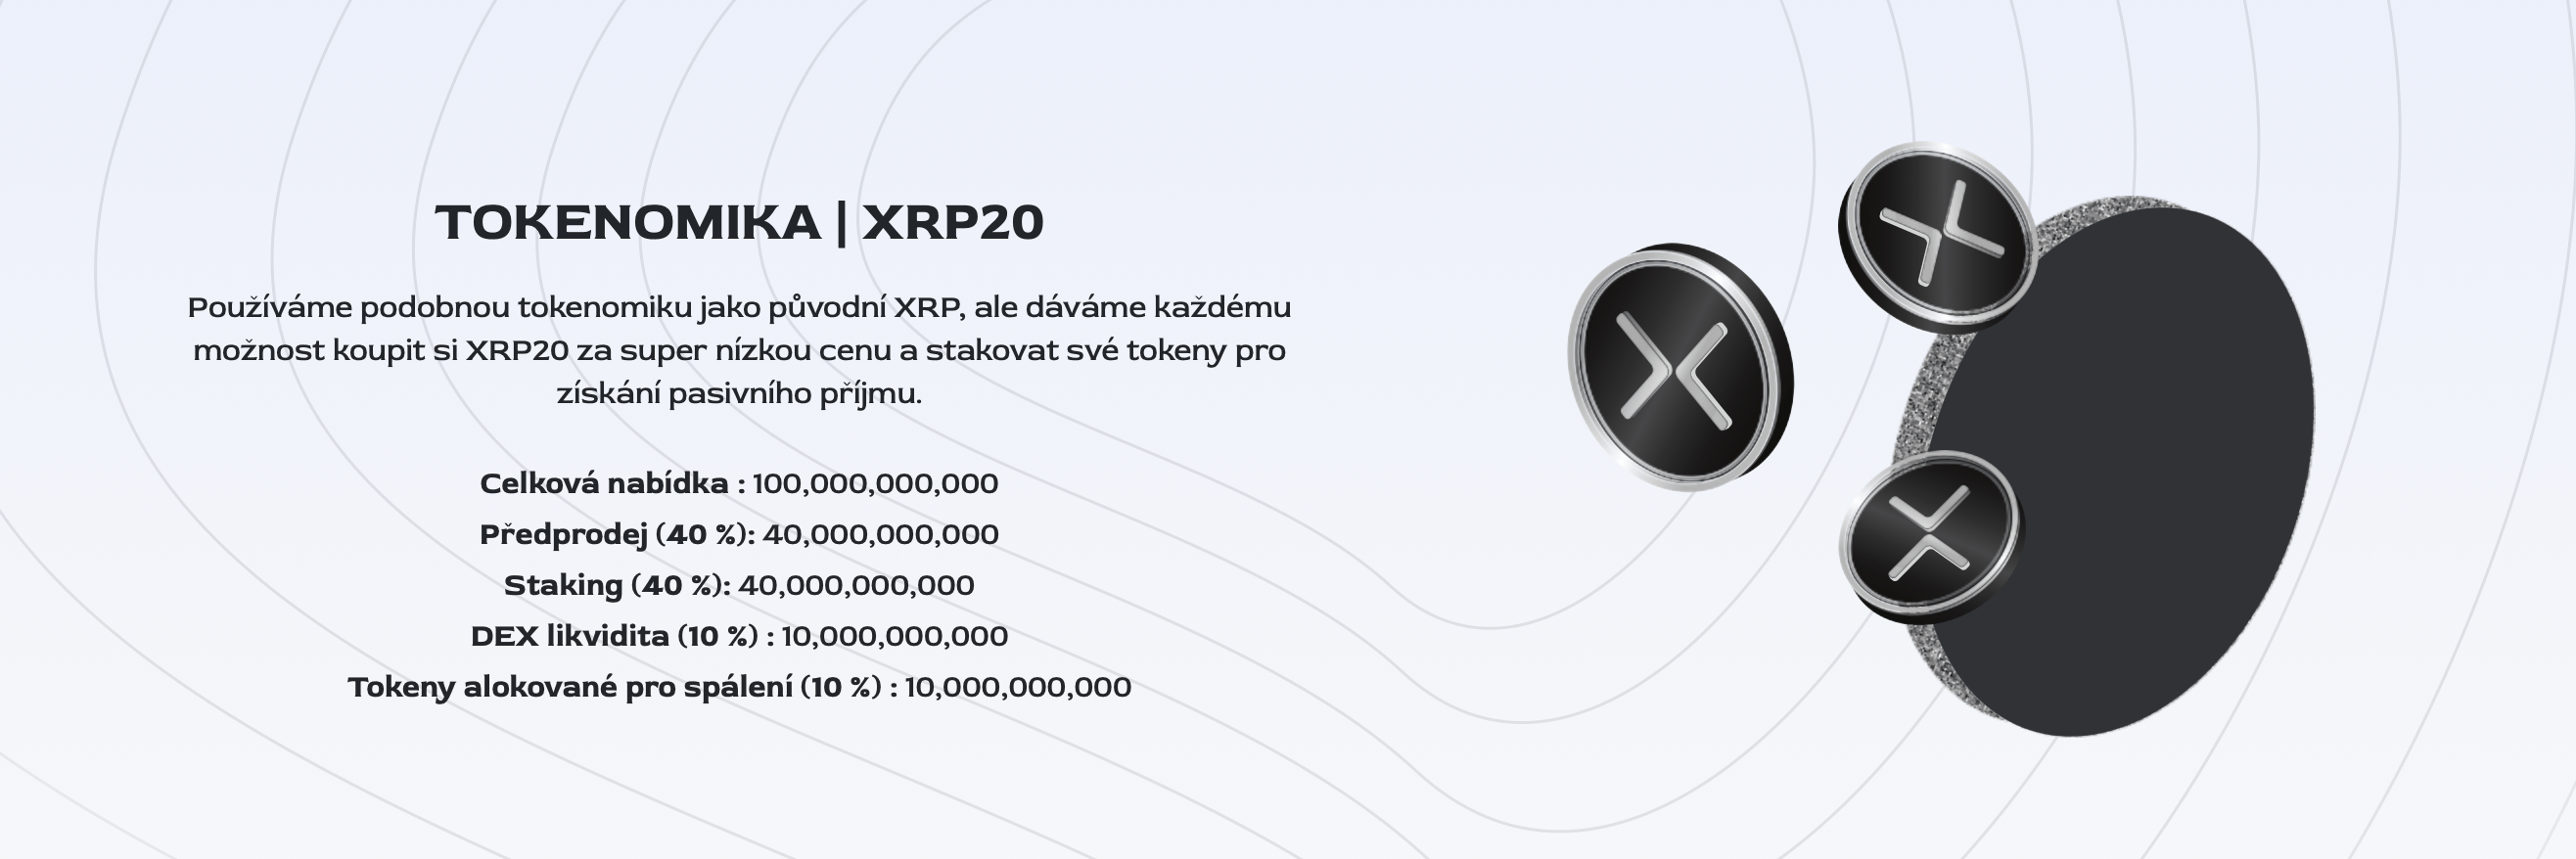 XRP20_tokenomika